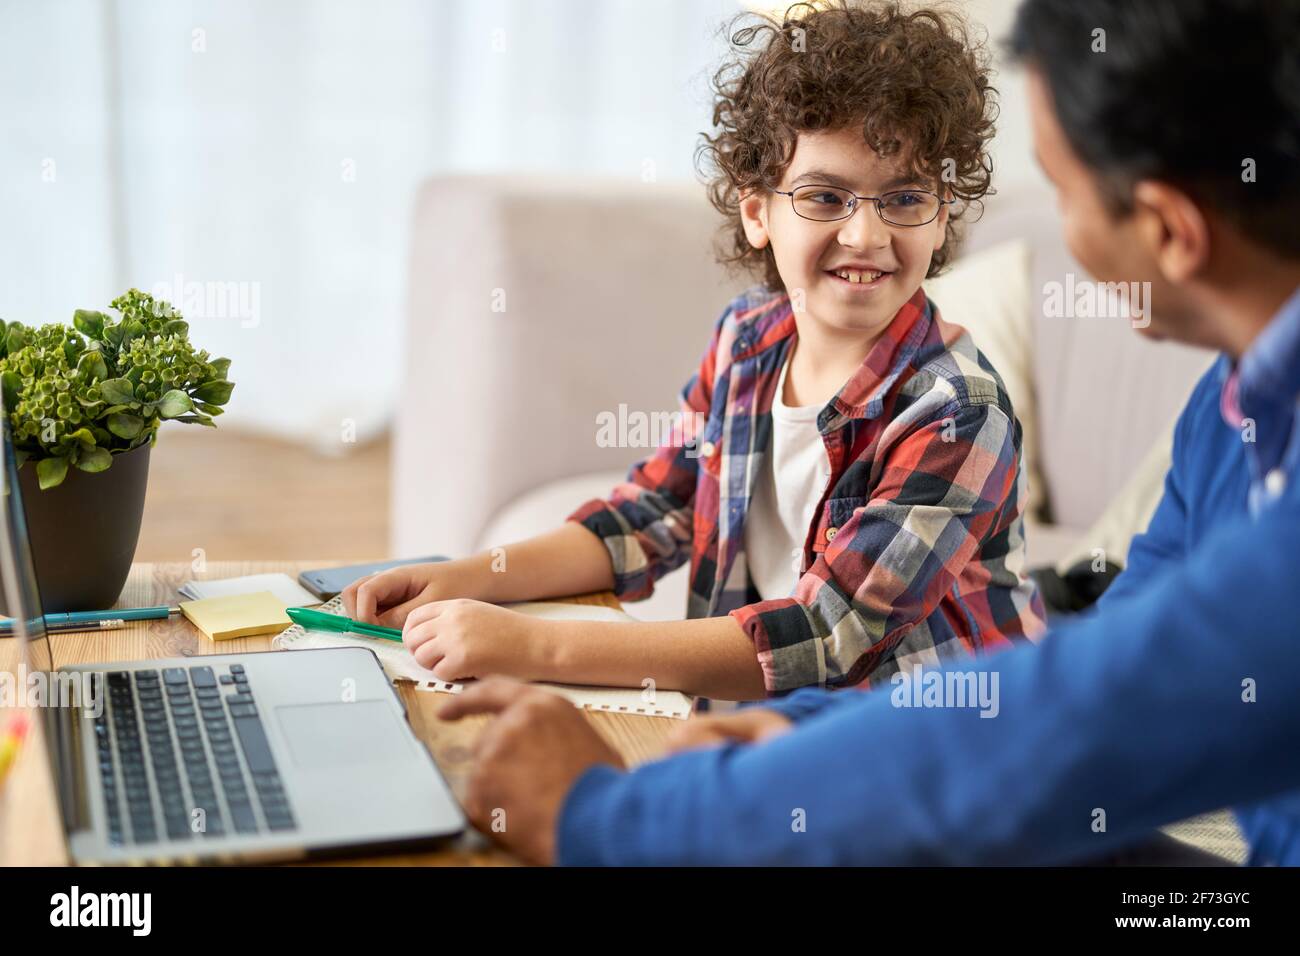 Sehr nette Schülerin. Fröhlicher kleiner lateinamerikanischer Schuljunge, der zusammen mit seinem Vater Hausaufgaben macht und dabei einen Laptop benutzt, während er zu Hause am Schreibtisch sitzt Stockfoto